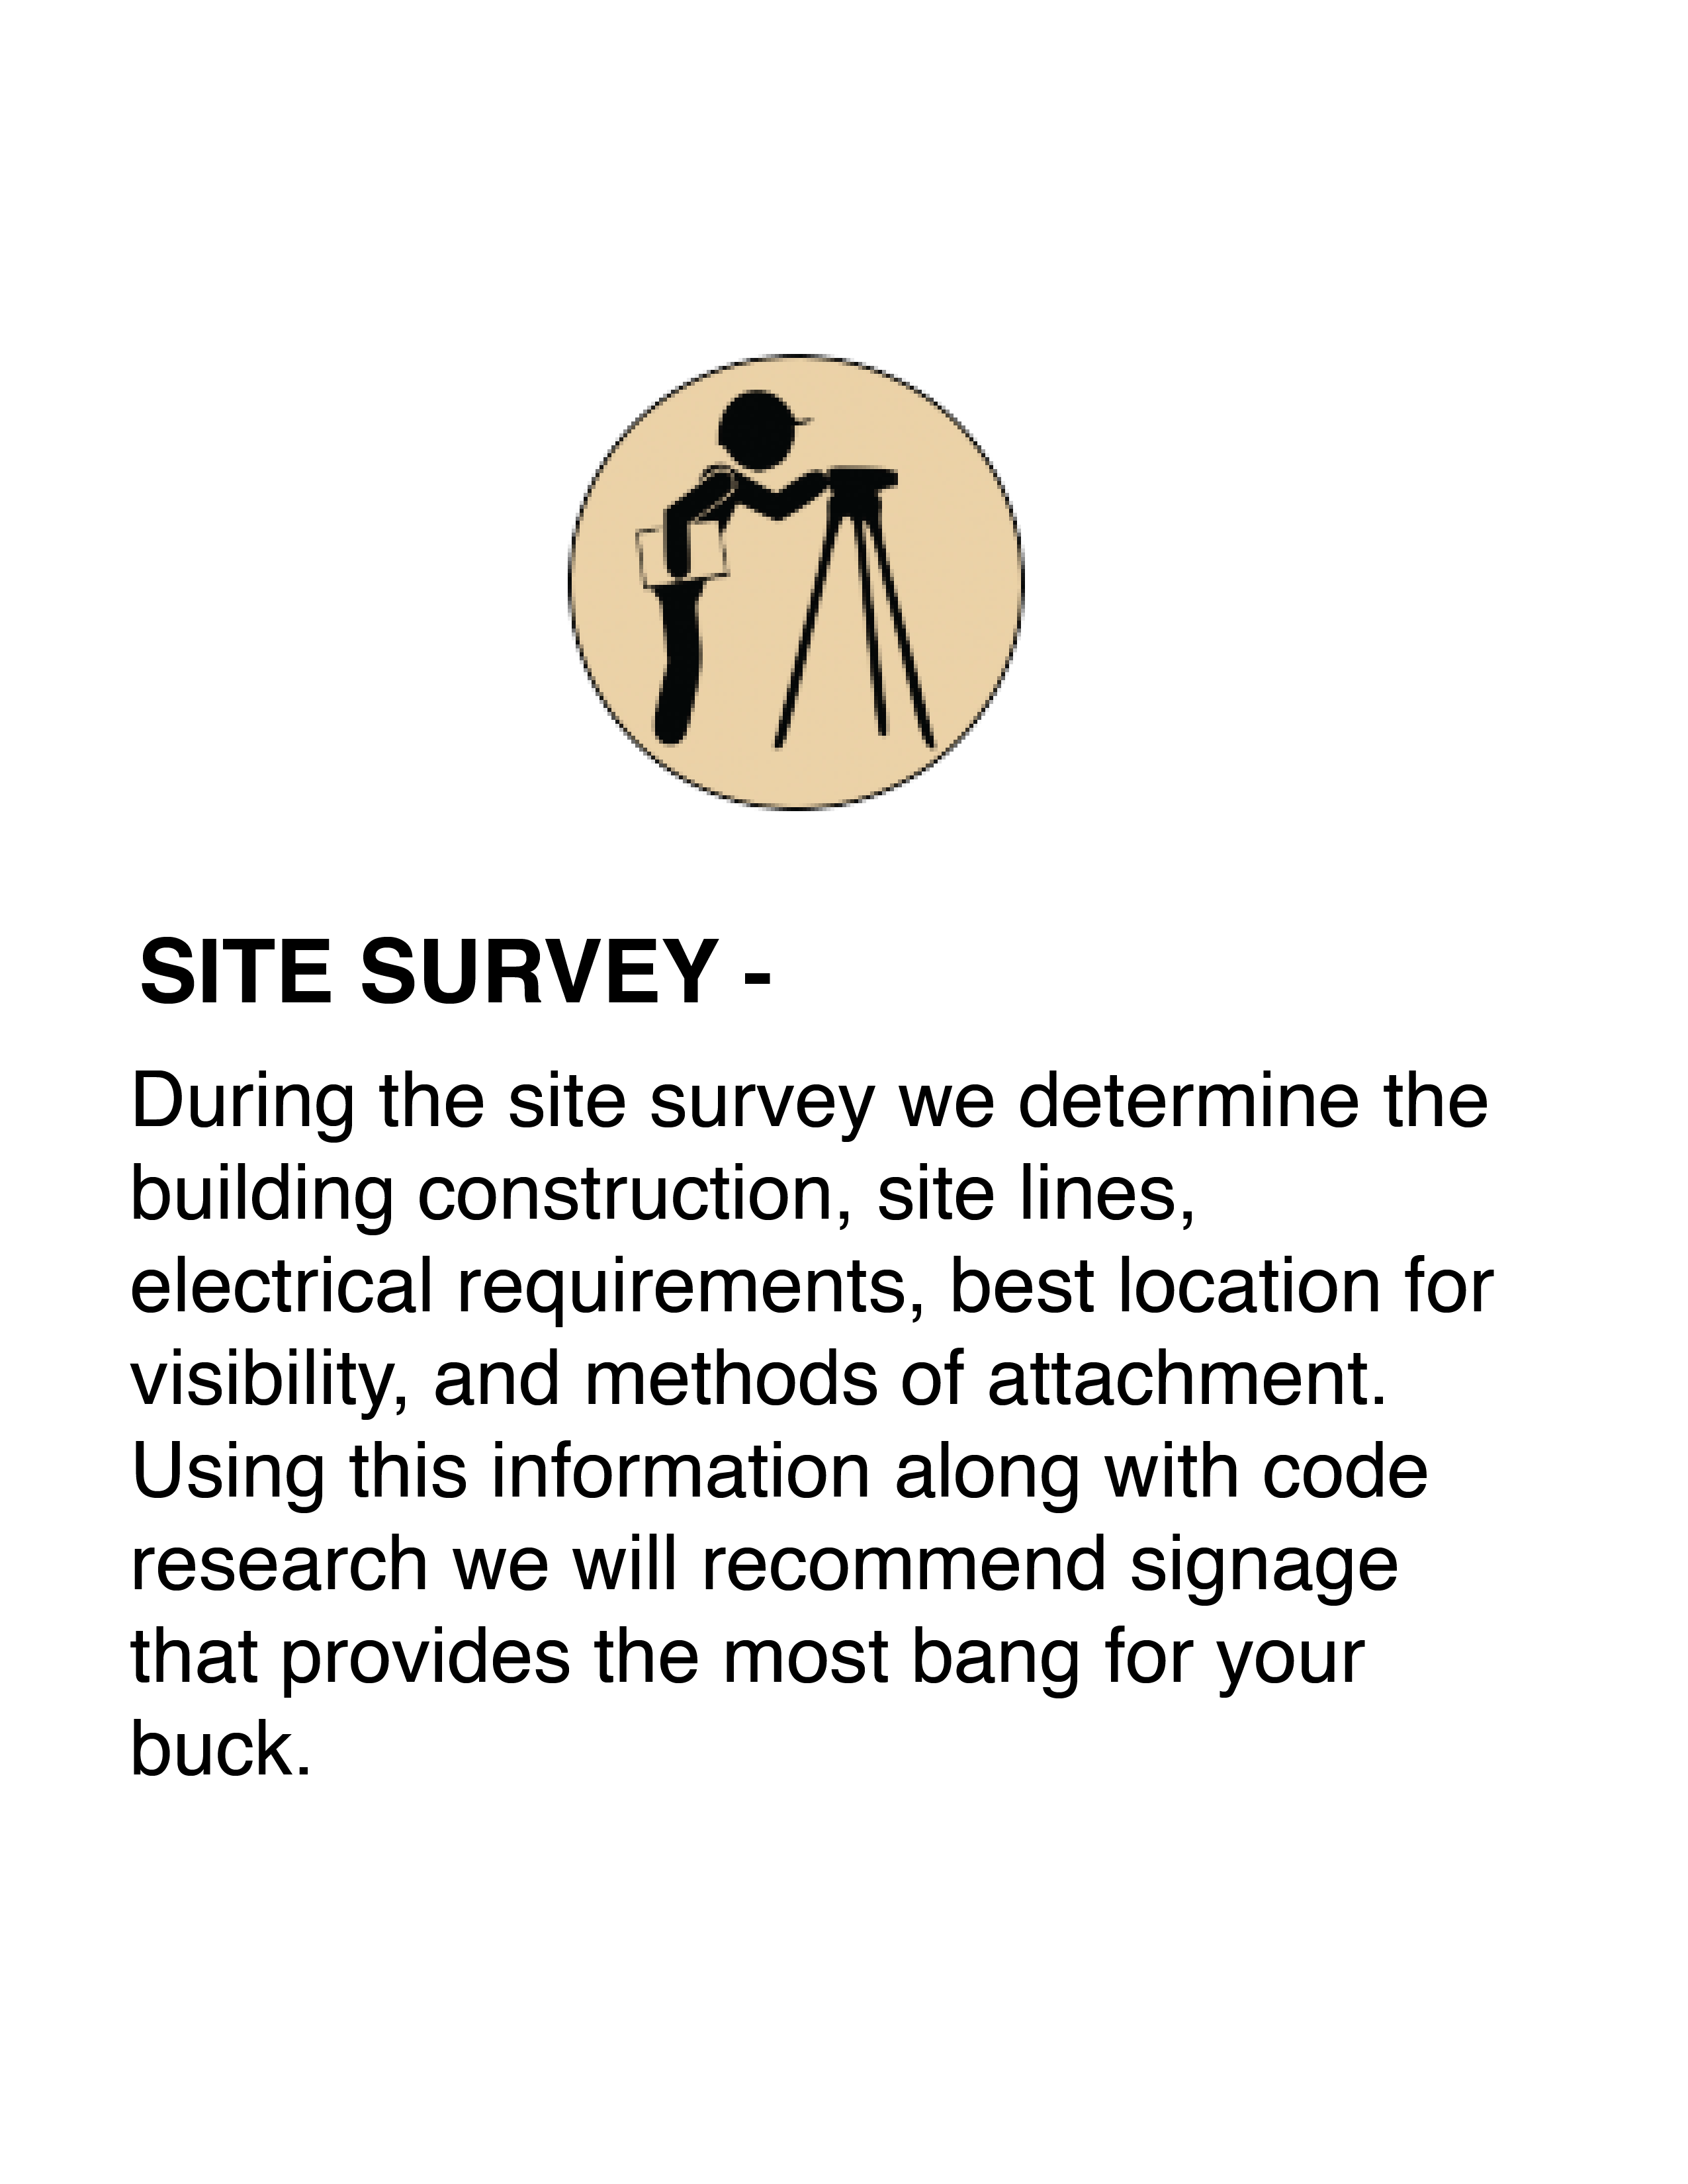 Site Survey Blurb